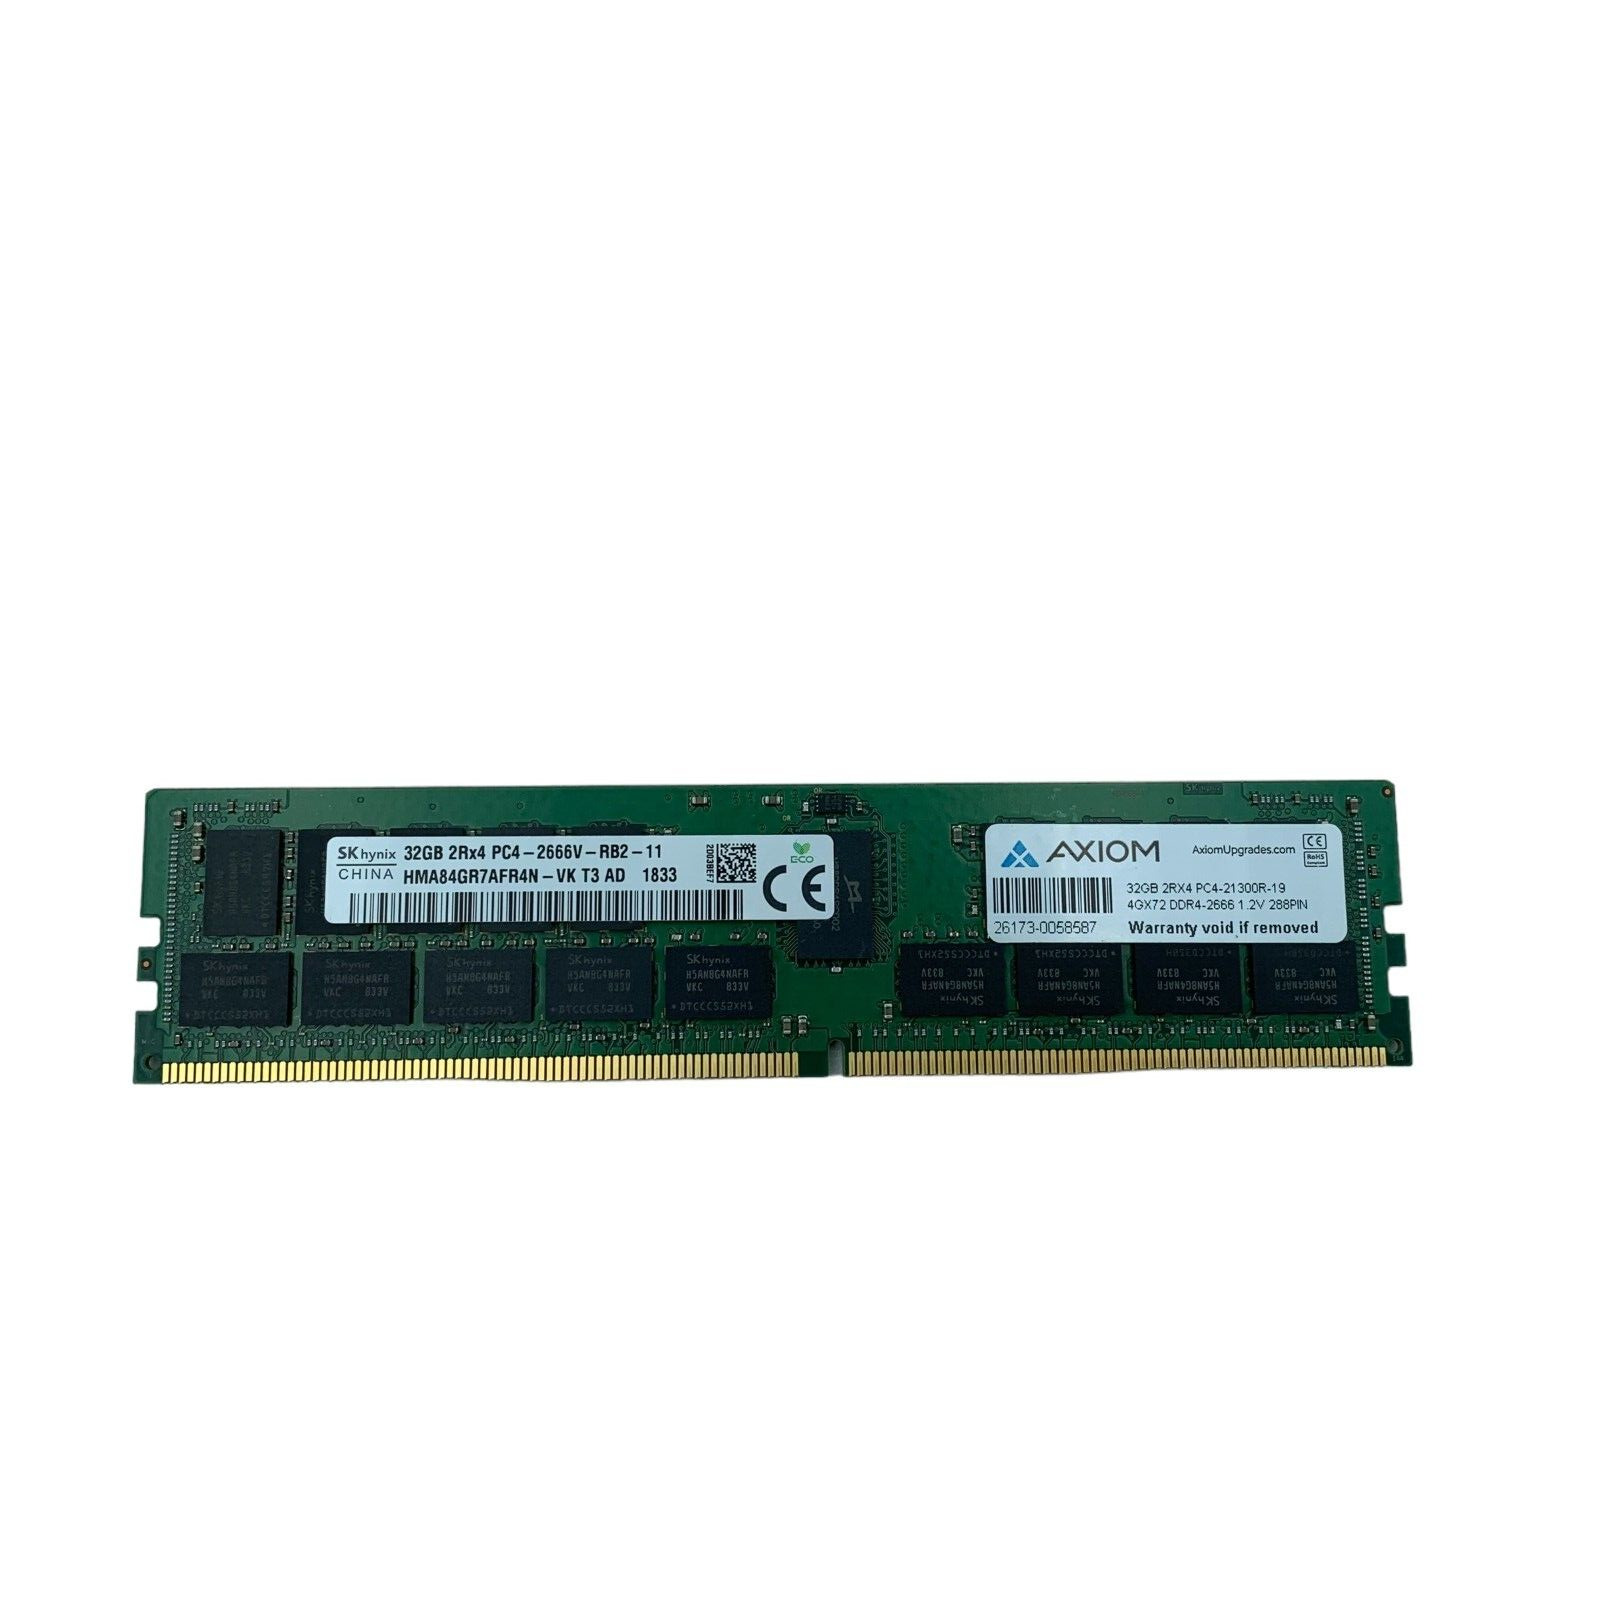 Hynix 32GB PC4-2666V-R 2Rx4 ECC REG RDIMM Server Memory HMA84GR7AFR4N-VK